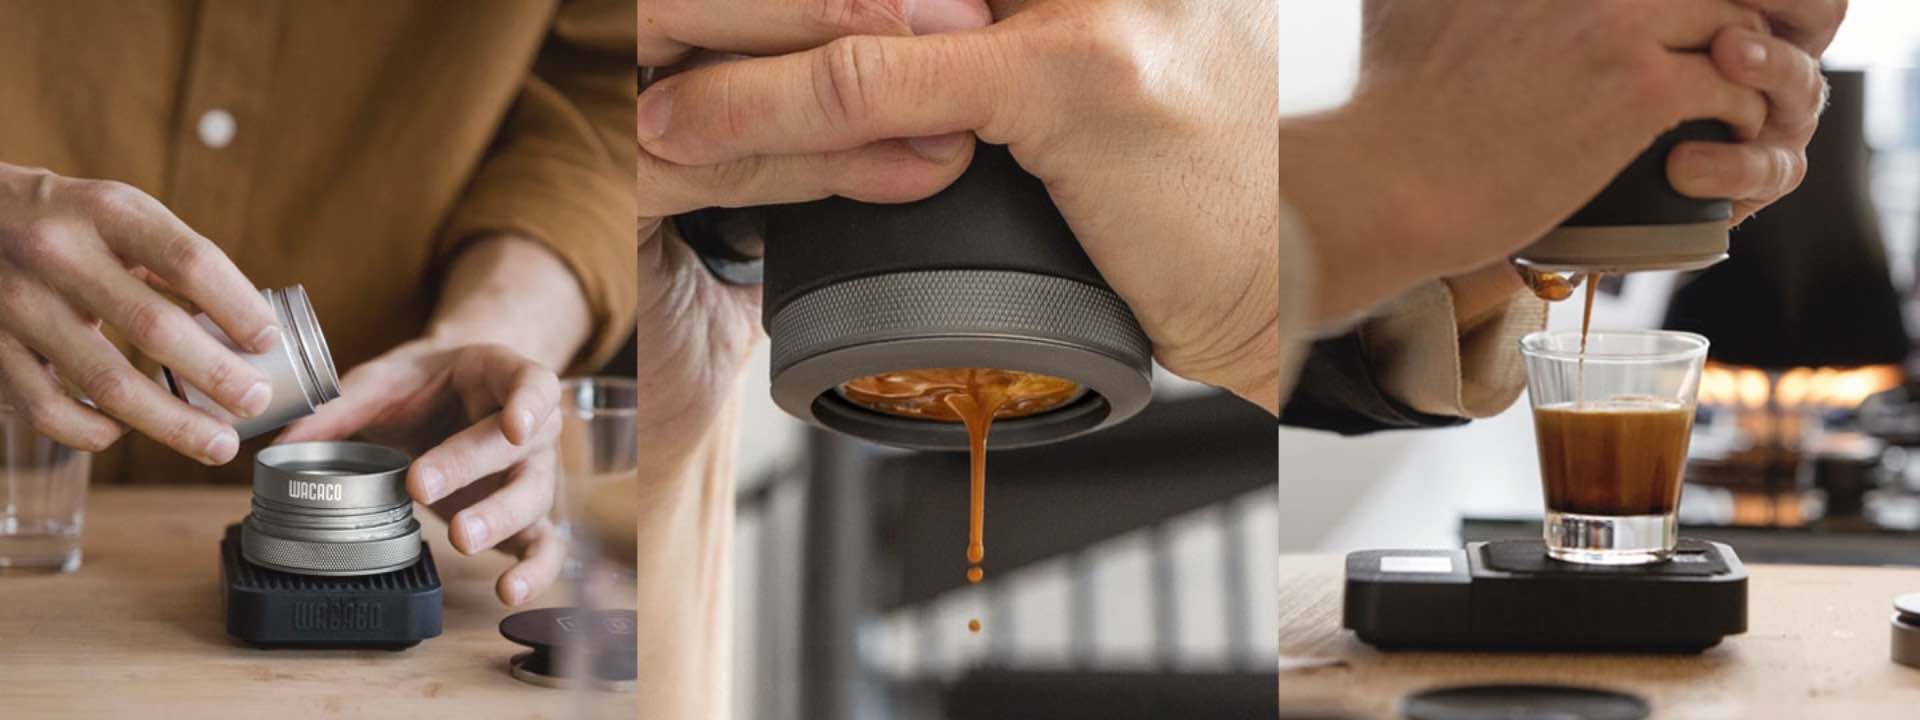 wacaco-picopresso-portable-espresso-maker-process